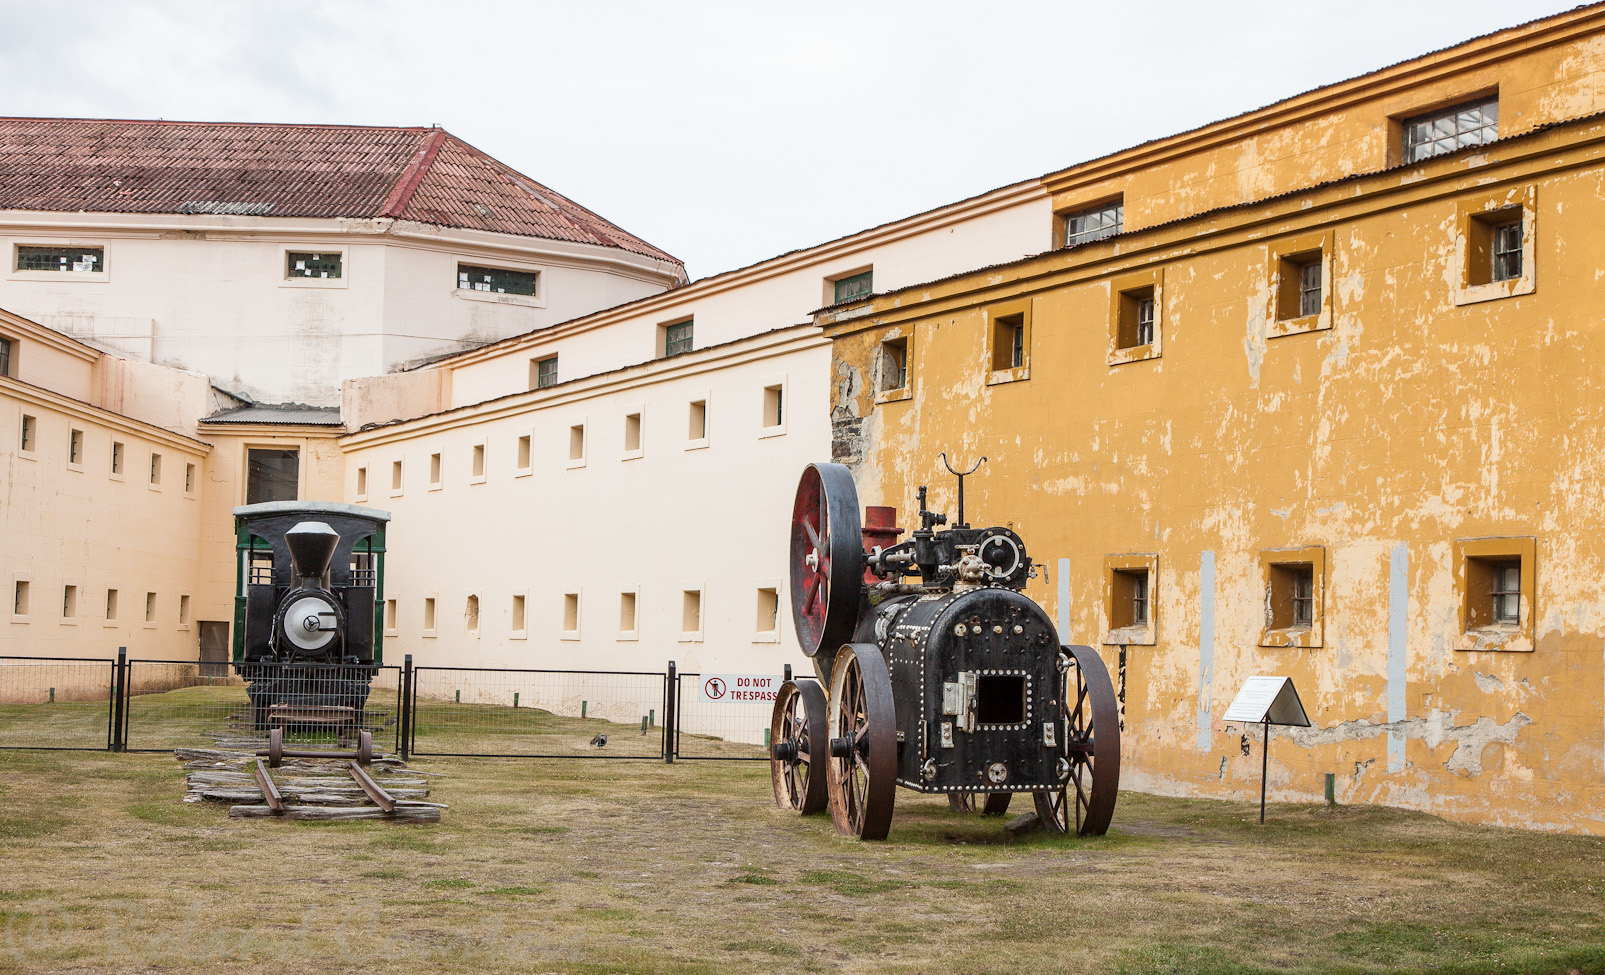 Ancienne prison transformée en musée